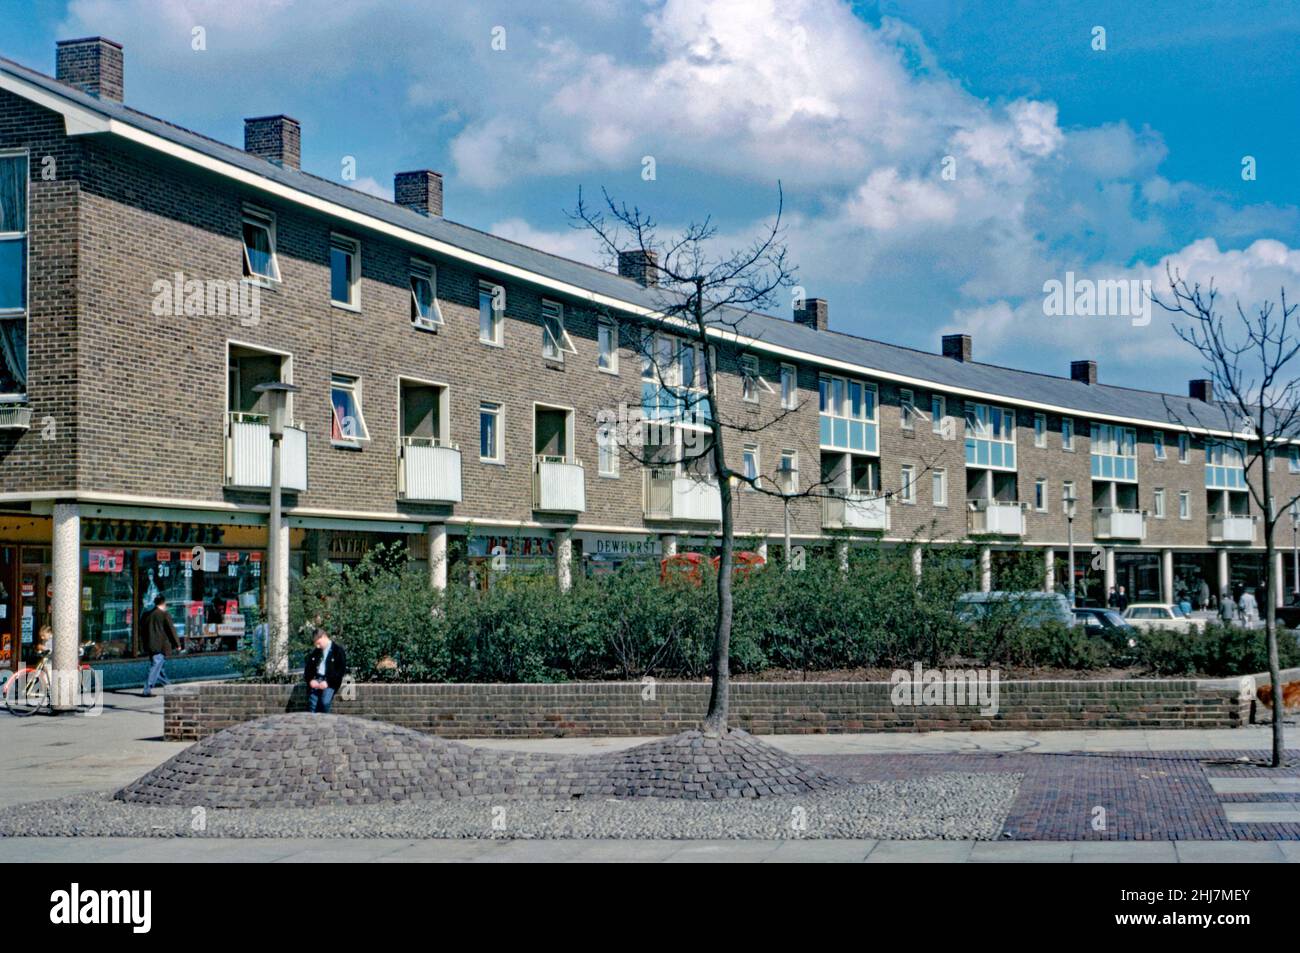 Nouveaux magasins et appartements (maisonnettes) ci-dessus à Tilgate Parade, Ashdown Drive dans la zone de Tilgate de Crawley 'New Town', West Sussex, Angleterre, Royaume-Uni en 1966.Le quartier, au sud du centre-ville, était l'une des 14 banlieues développées pour créer la nouvelle ville d'après-guerre.La parade à la façade de briques a une forme légèrement courbée.Après la Seconde Guerre mondiale, afin de relocaliser ceux qui vivent dans des logements pauvres ou bombardés à Londres, un grand nombre de personnes et d’emplois ont été transférés dans de nouvelles villes autour de la se Angleterre et Crawley en était une.Cette image est tirée d'une ancienne transparence de couleur amateur – une photographie vintage 1960s. Banque D'Images